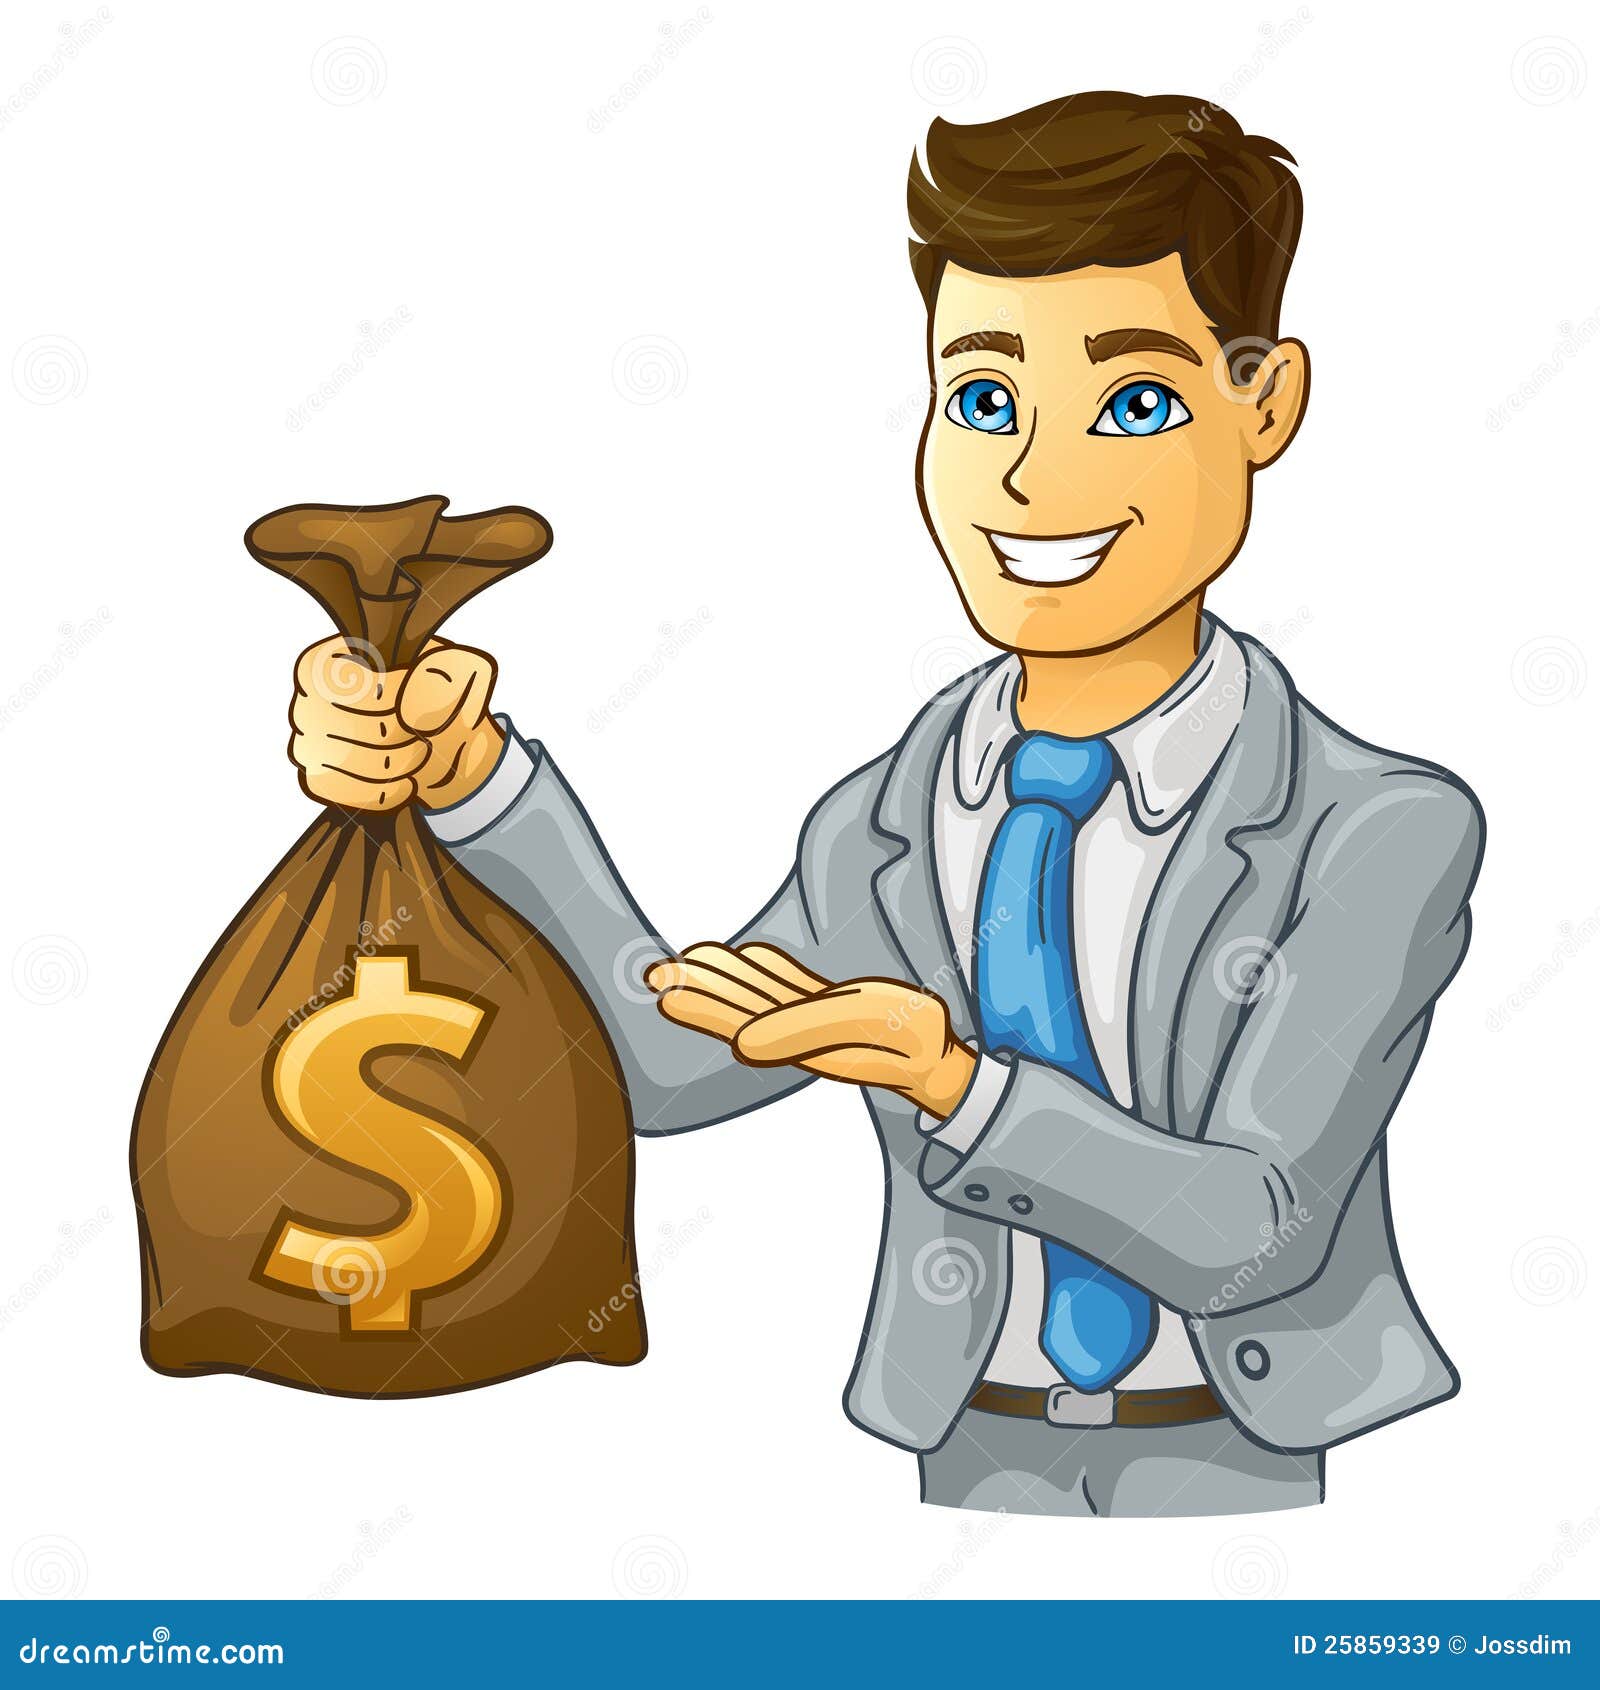 business-man-holding-money-bag-25859339.jpg